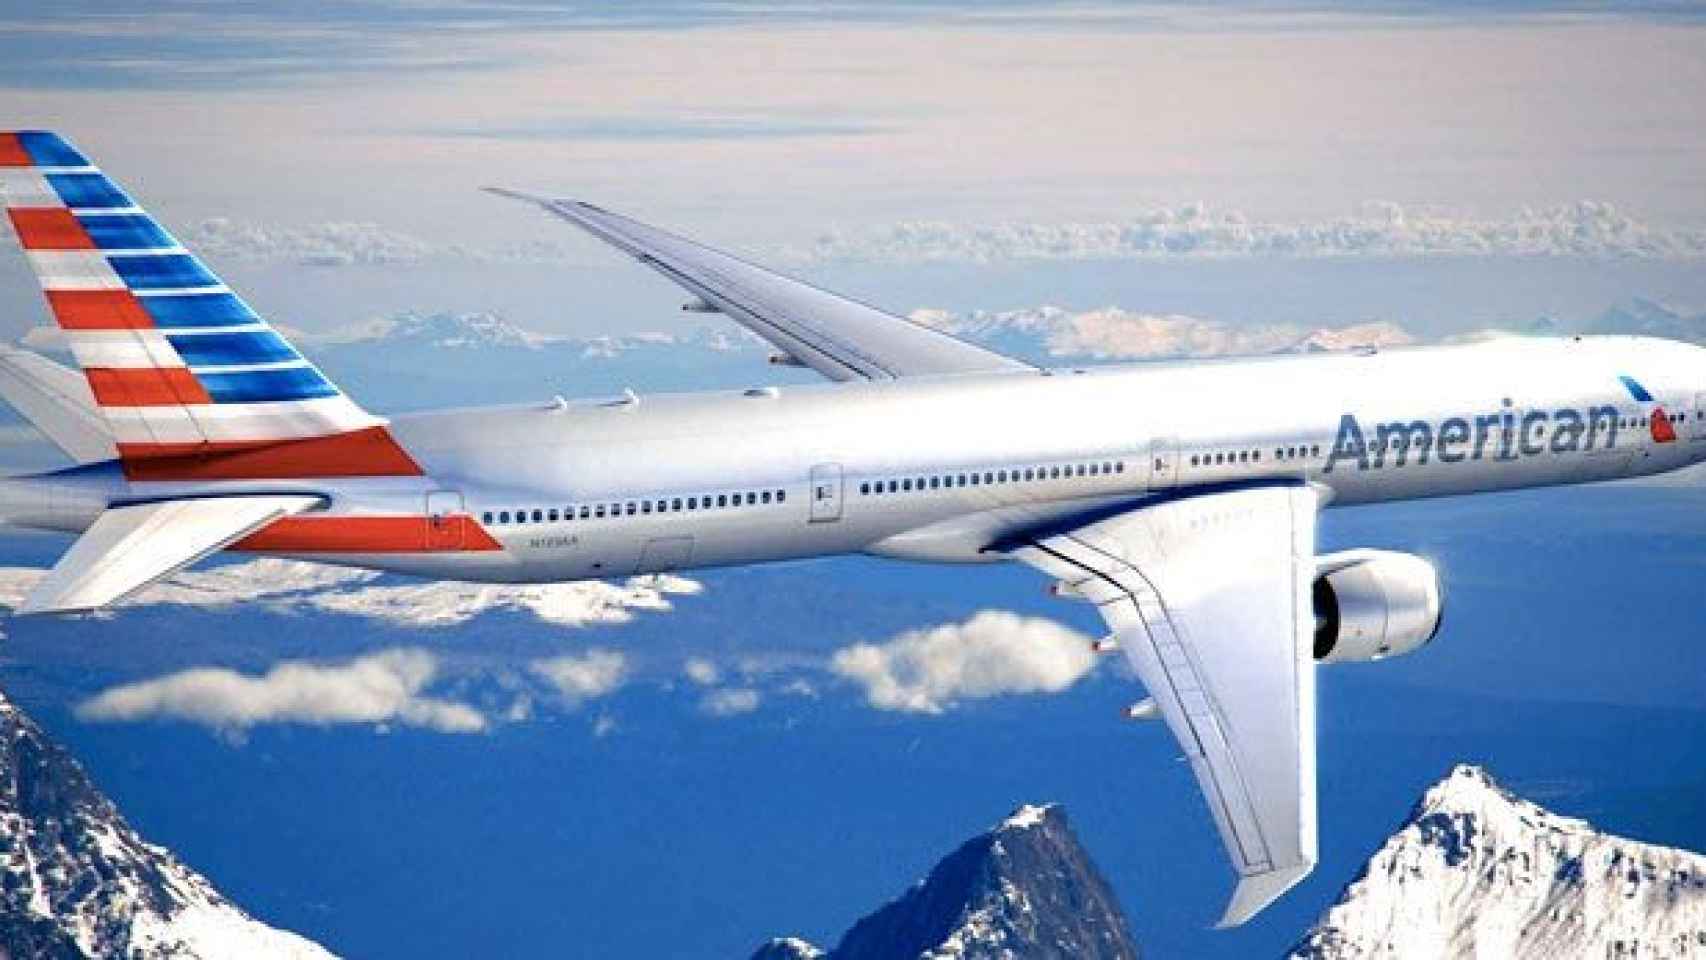 Imagen promocional de uno de los aviones de la flota de American Airlines / CG